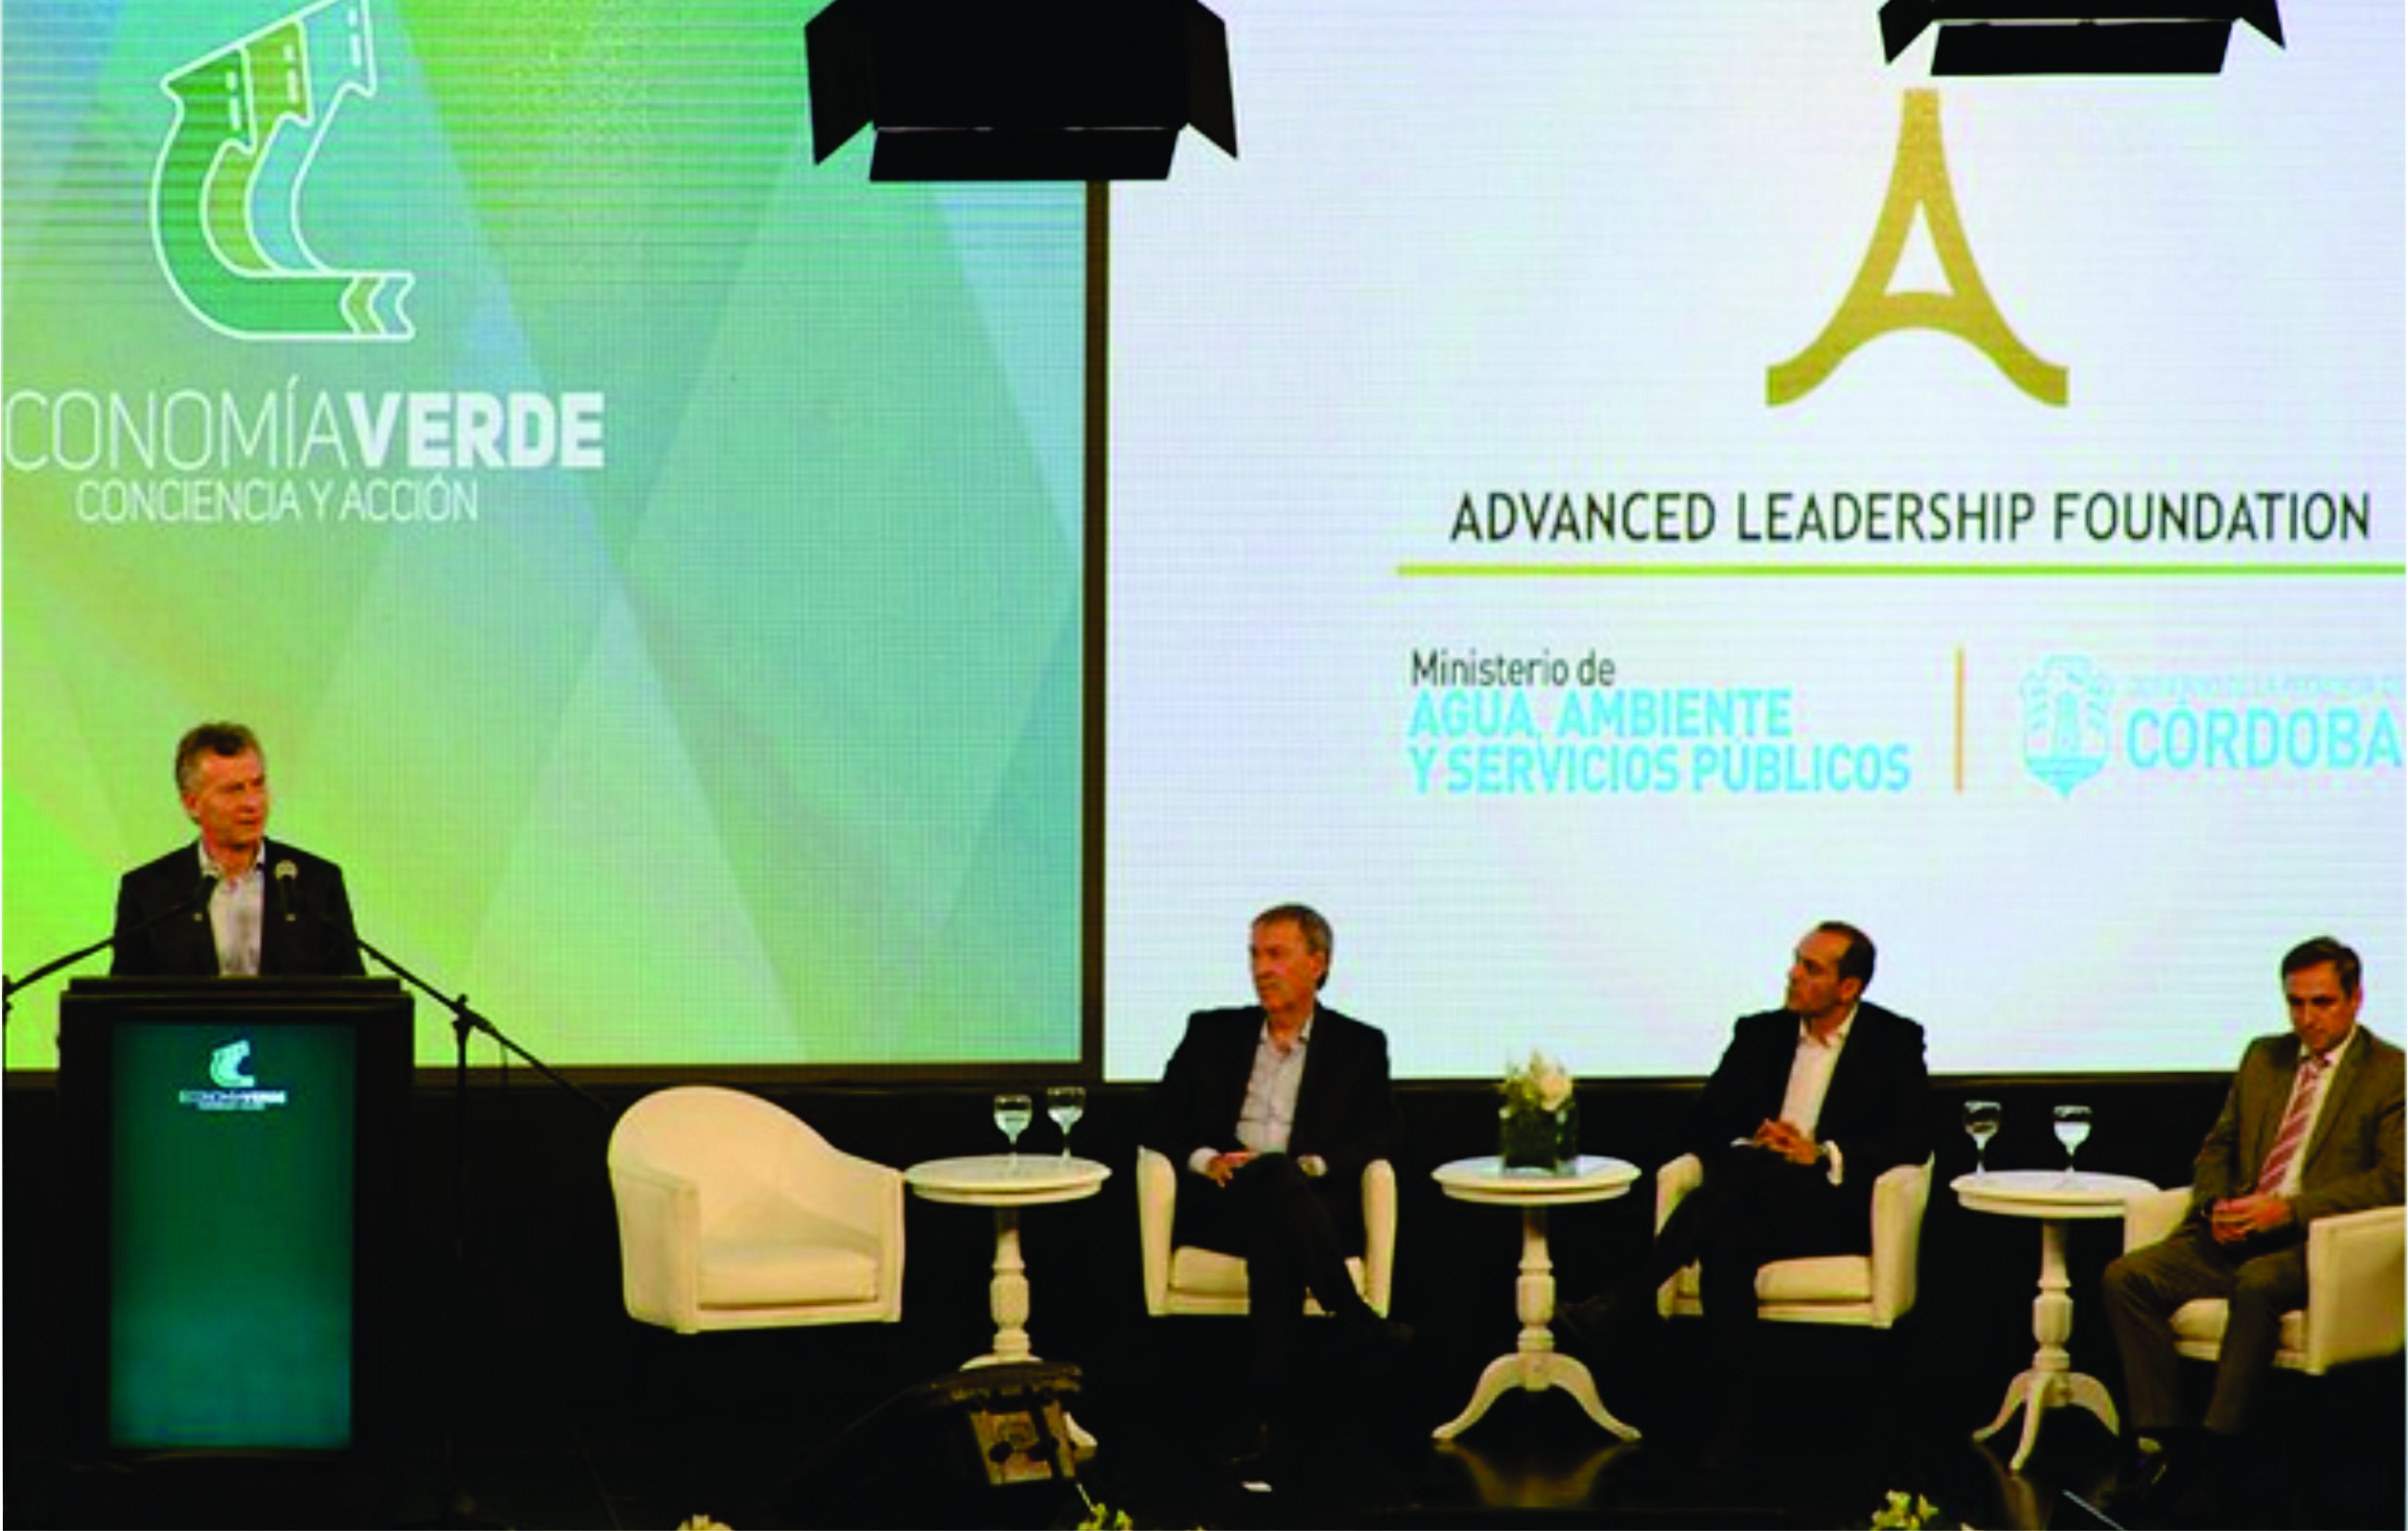 Macri, Schiaretti y Axel en la primera jornada del Congreso Latinoamericano de Economía Verde